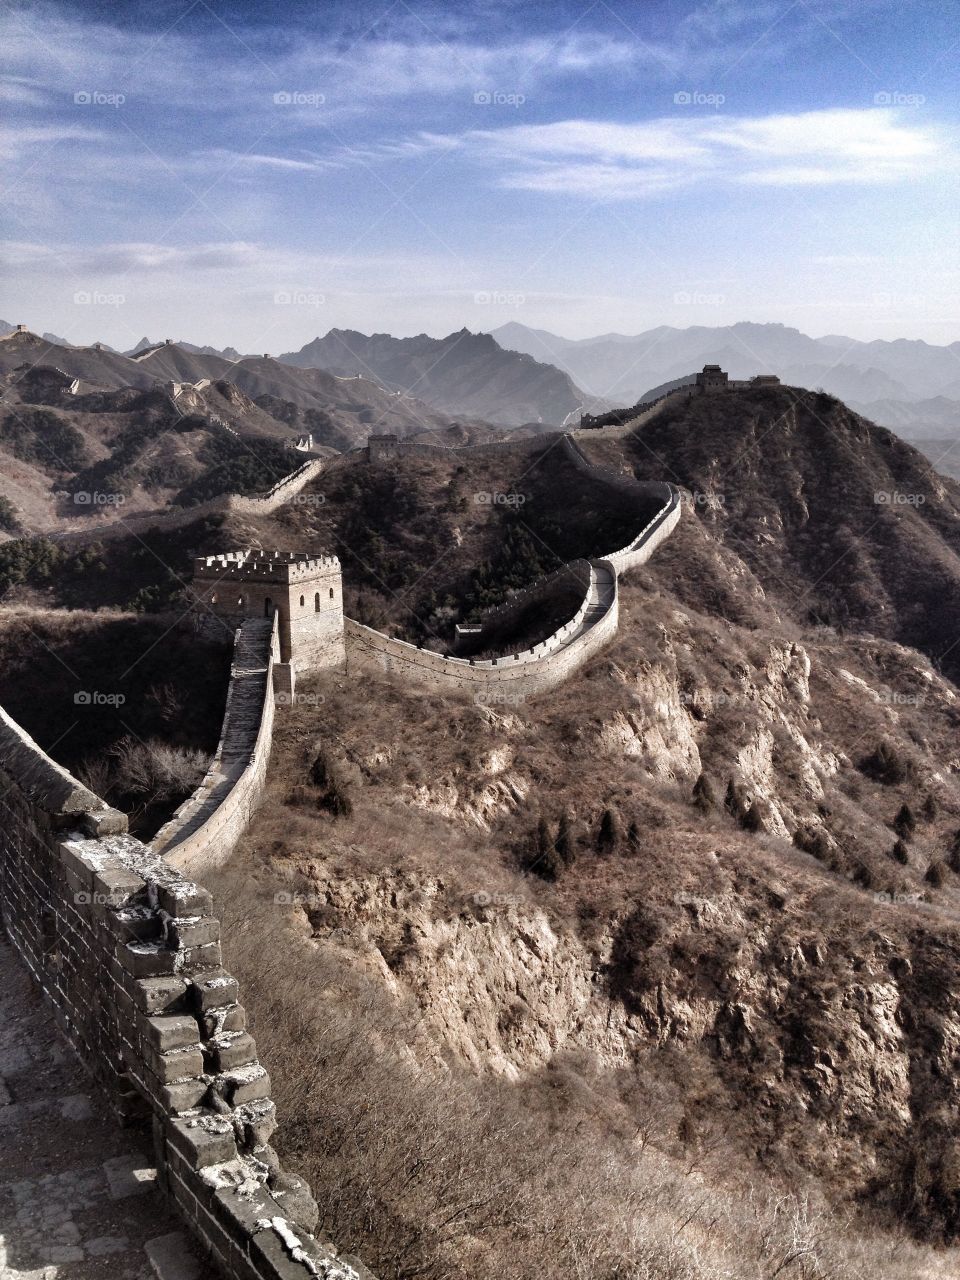 Great Wall scene in winter